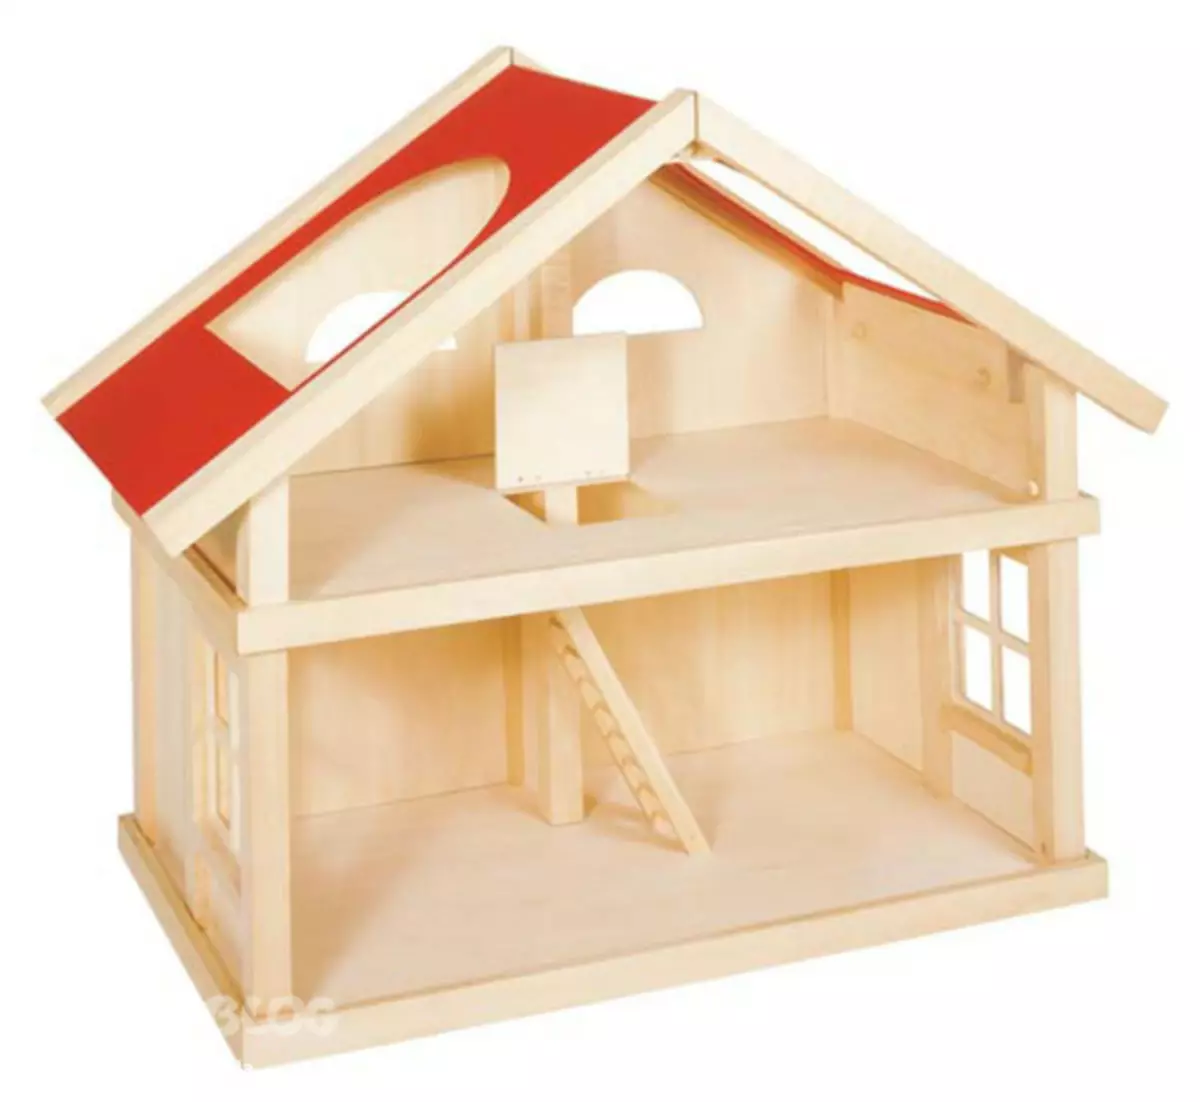 Puppet House gikan sa plywood nga adunay imong kaugalingon nga mga kamot nga adunay mga litrato ug video